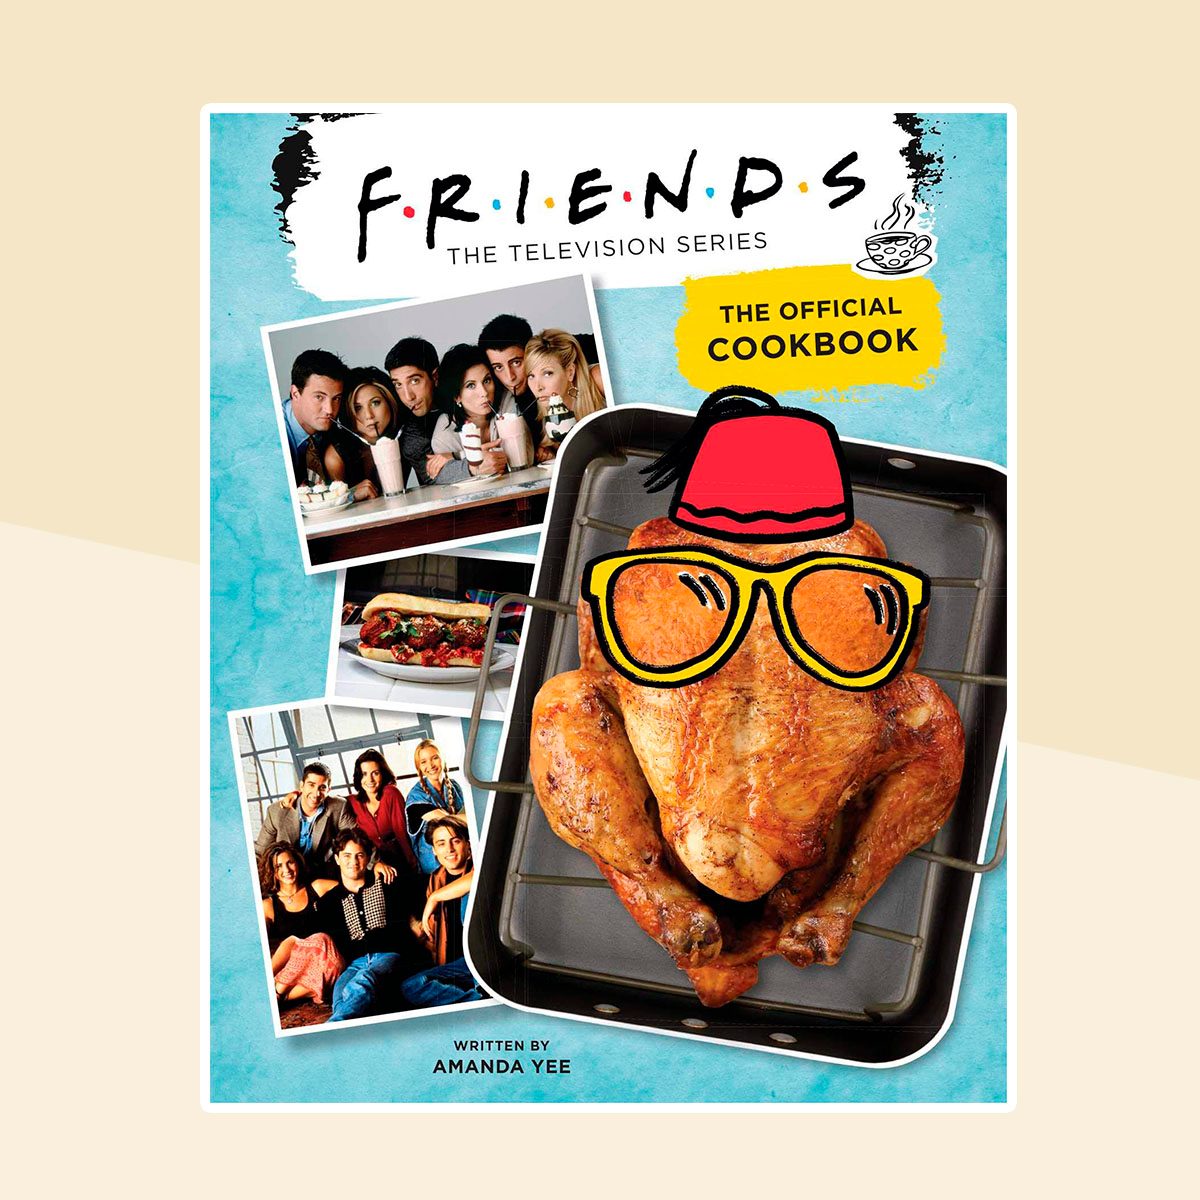 《朋友:官方烹饪书精装版》——2020年9月22日